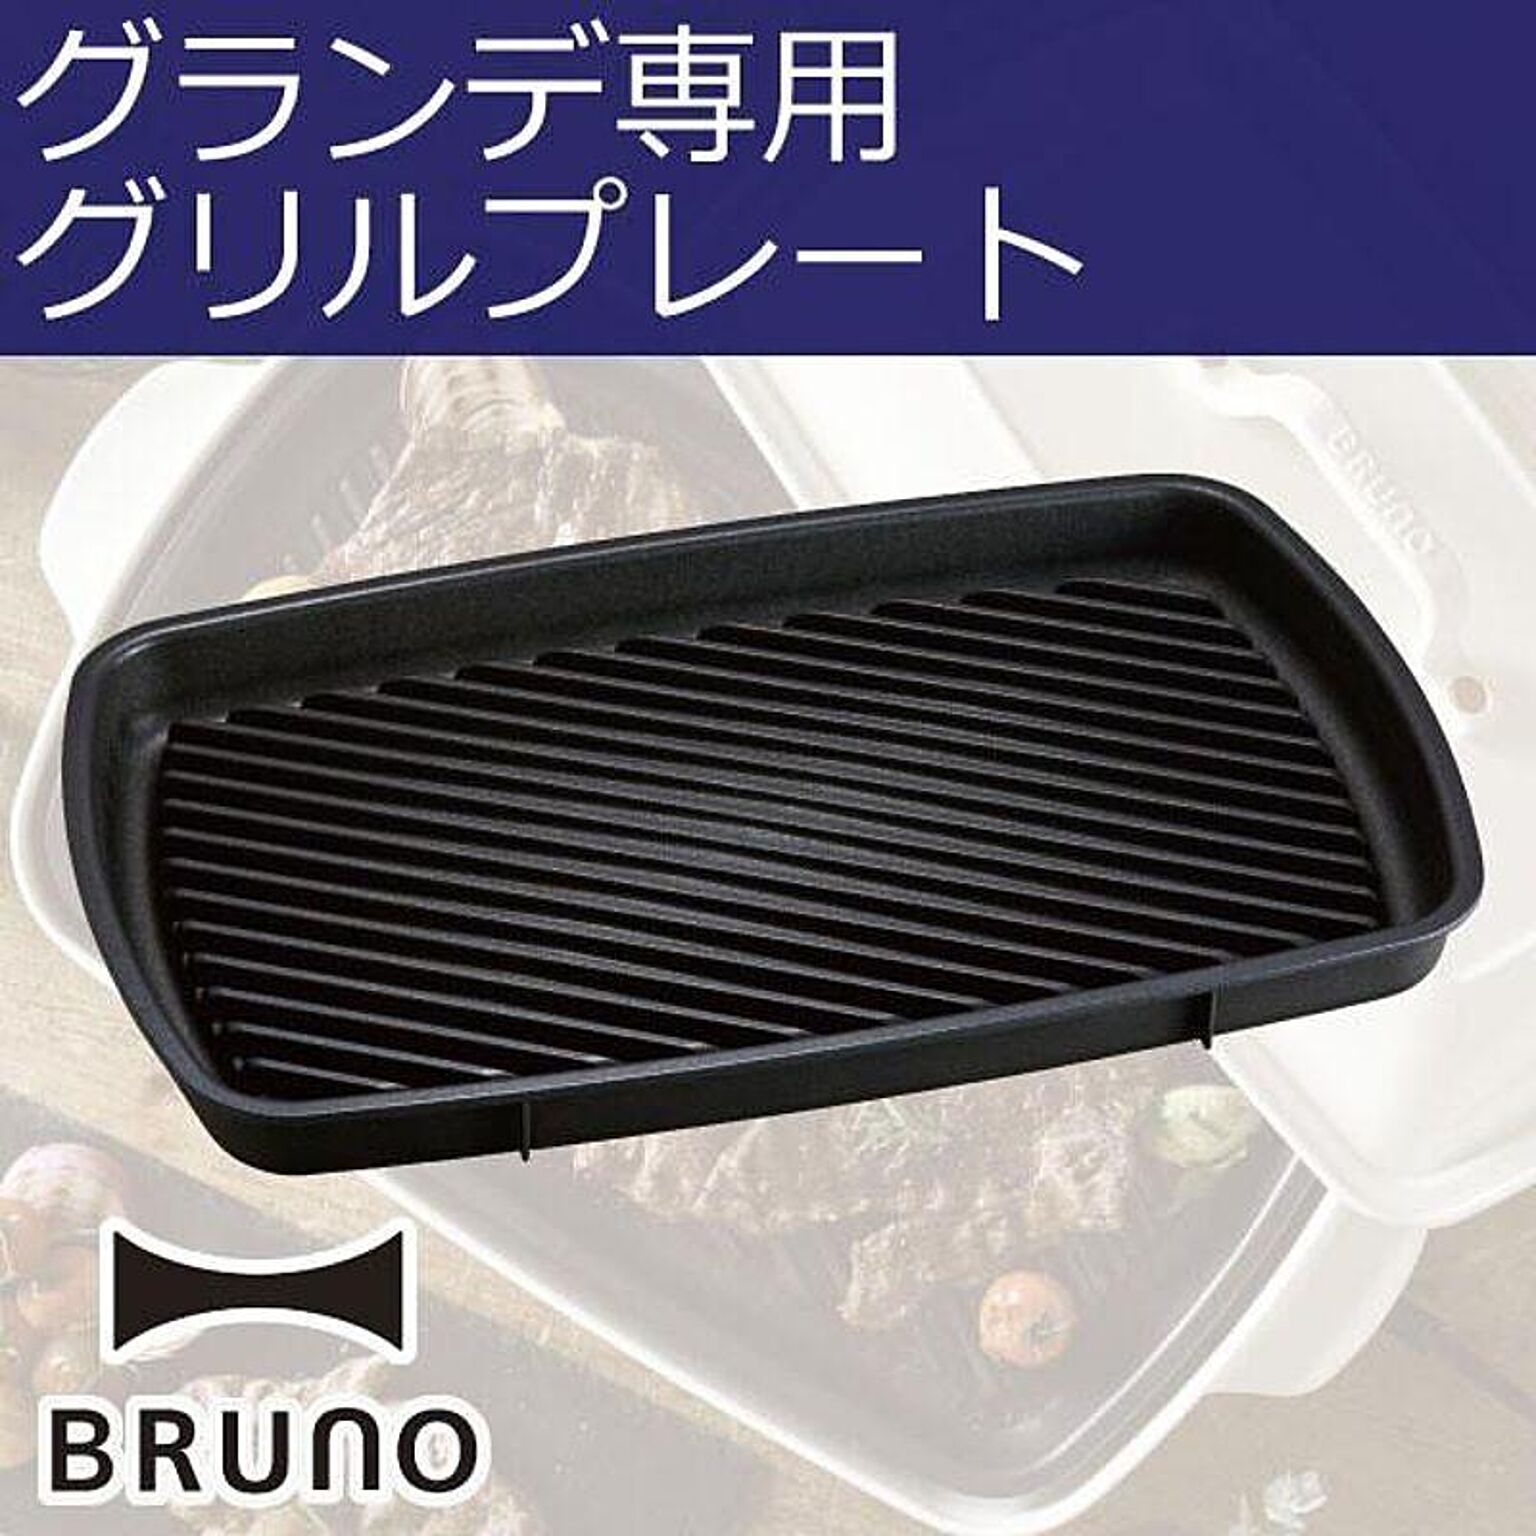 イデアインターナショナル BRUNO ブルーノ ホットプレートグランデサイズ用 グリルプレート - 通販 | RoomClipショッピング